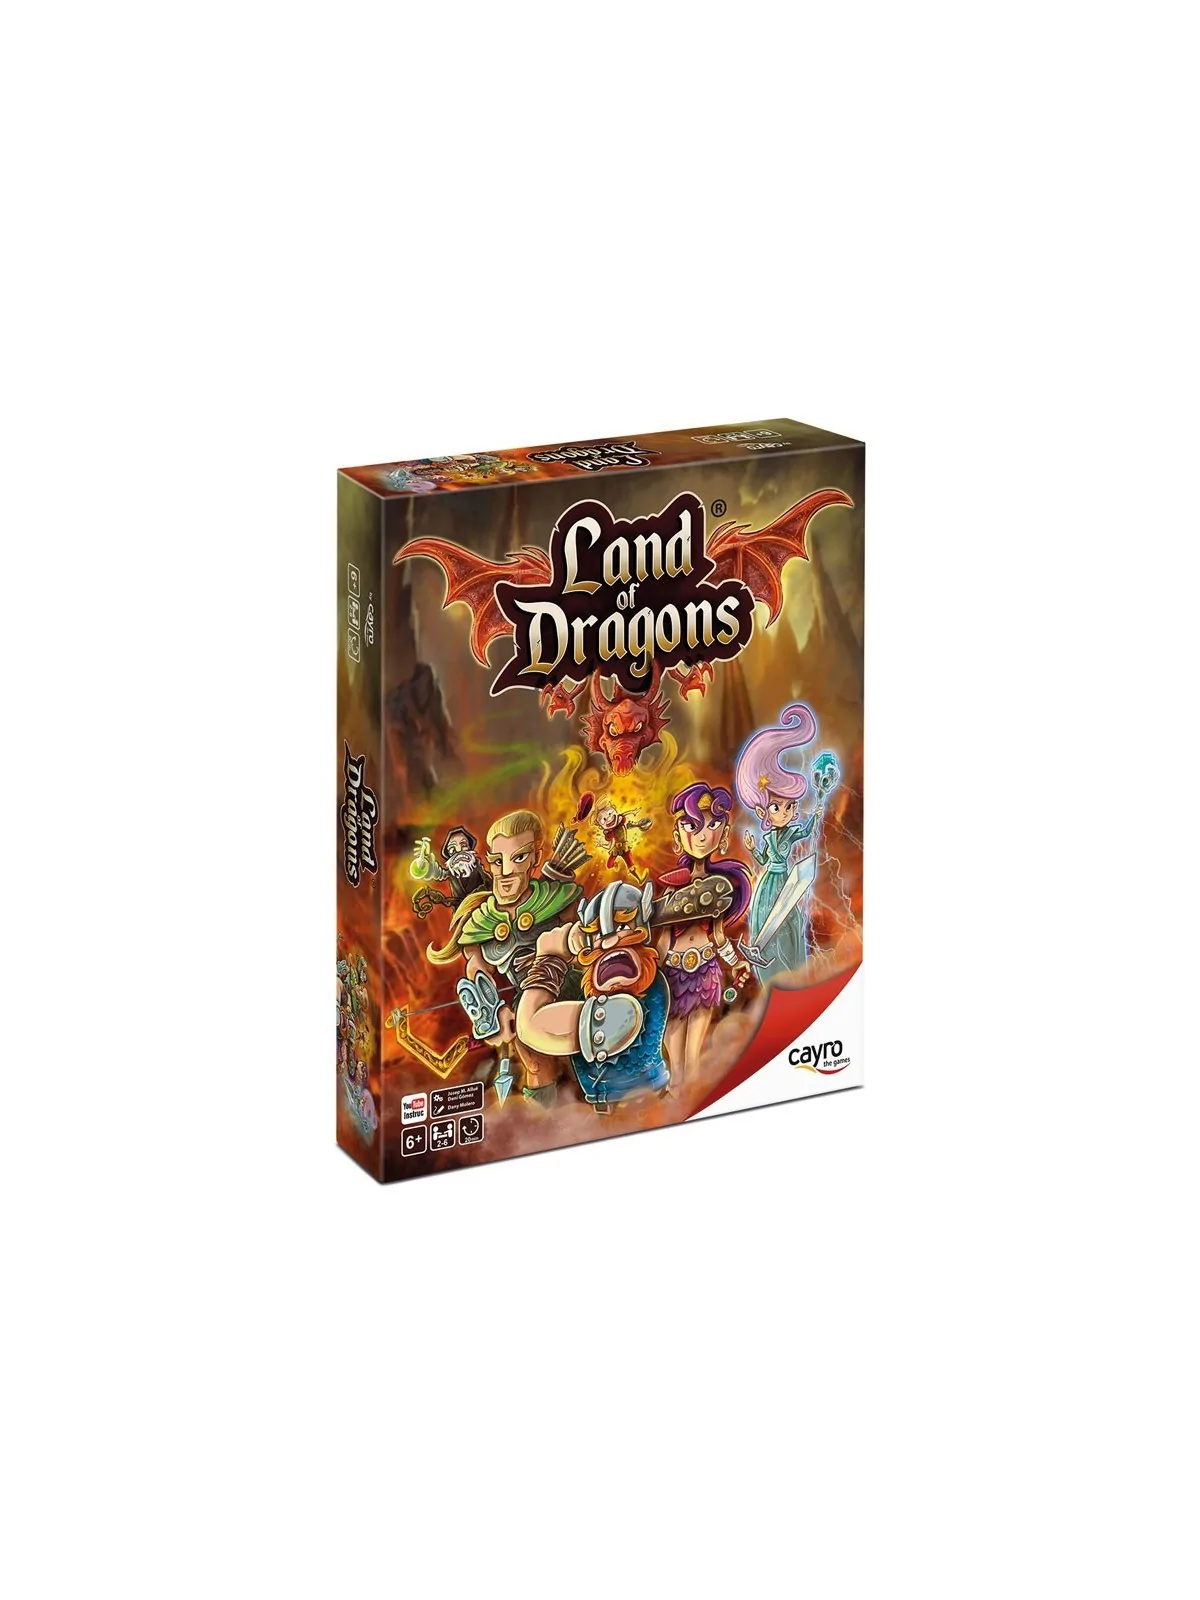 Comprar Land of Dragons barato al mejor precio 22,46 € de Cayro